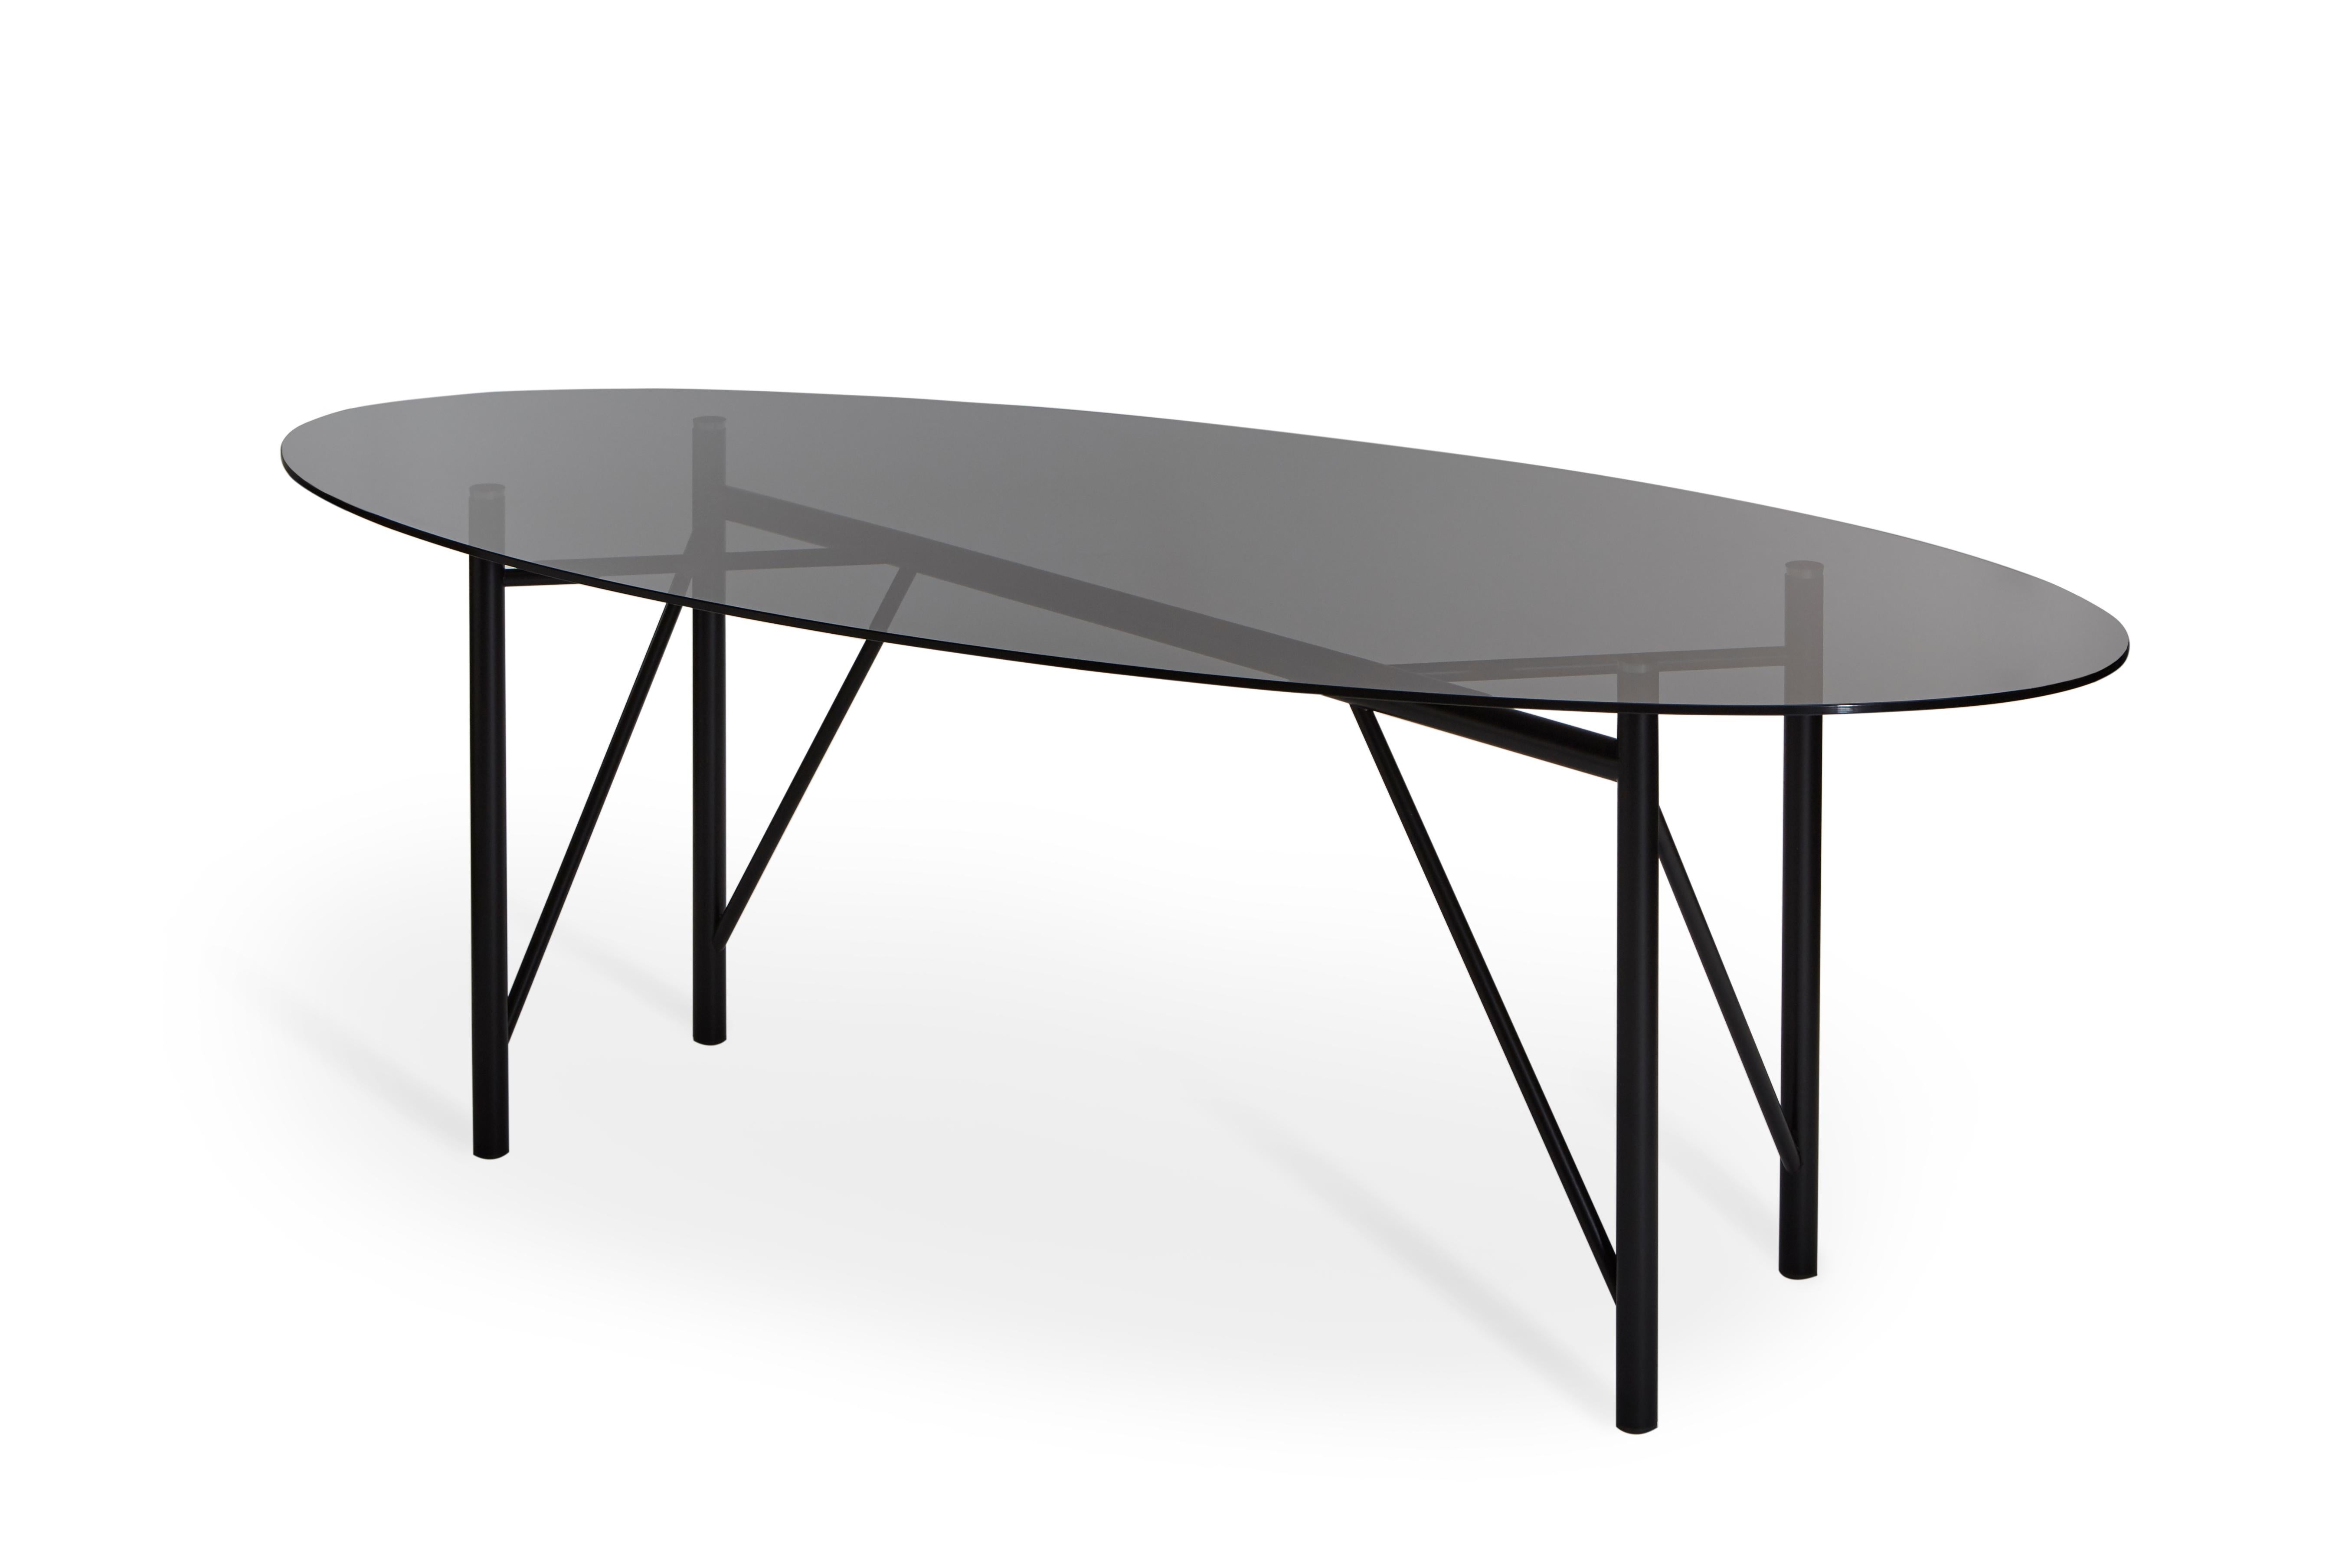 Nero Table tubulaire ovale de Mentemano
Dimensions : L220 x P 100 x H 75 cm
Matériaux : Base noire, dessus gris fumé

Le projet est basé sur la légèreté et l'attention portée aux détails. Les volumes et les lignes sont le résultat d'un processus